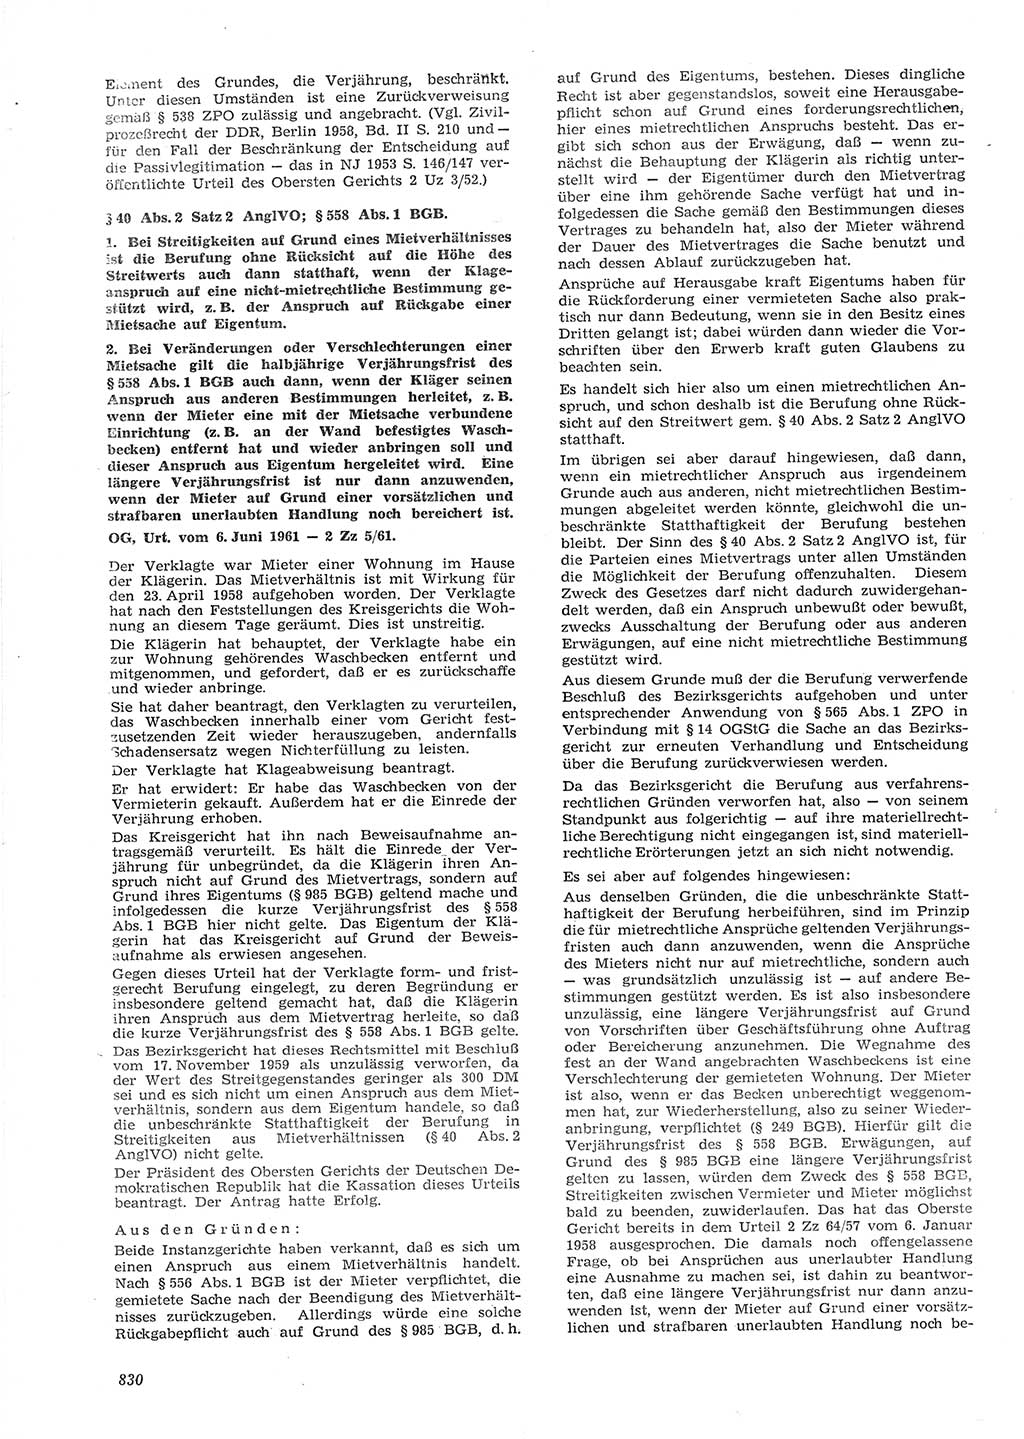 Neue Justiz (NJ), Zeitschrift für Recht und Rechtswissenschaft [Deutsche Demokratische Republik (DDR)], 15. Jahrgang 1961, Seite 830 (NJ DDR 1961, S. 830)